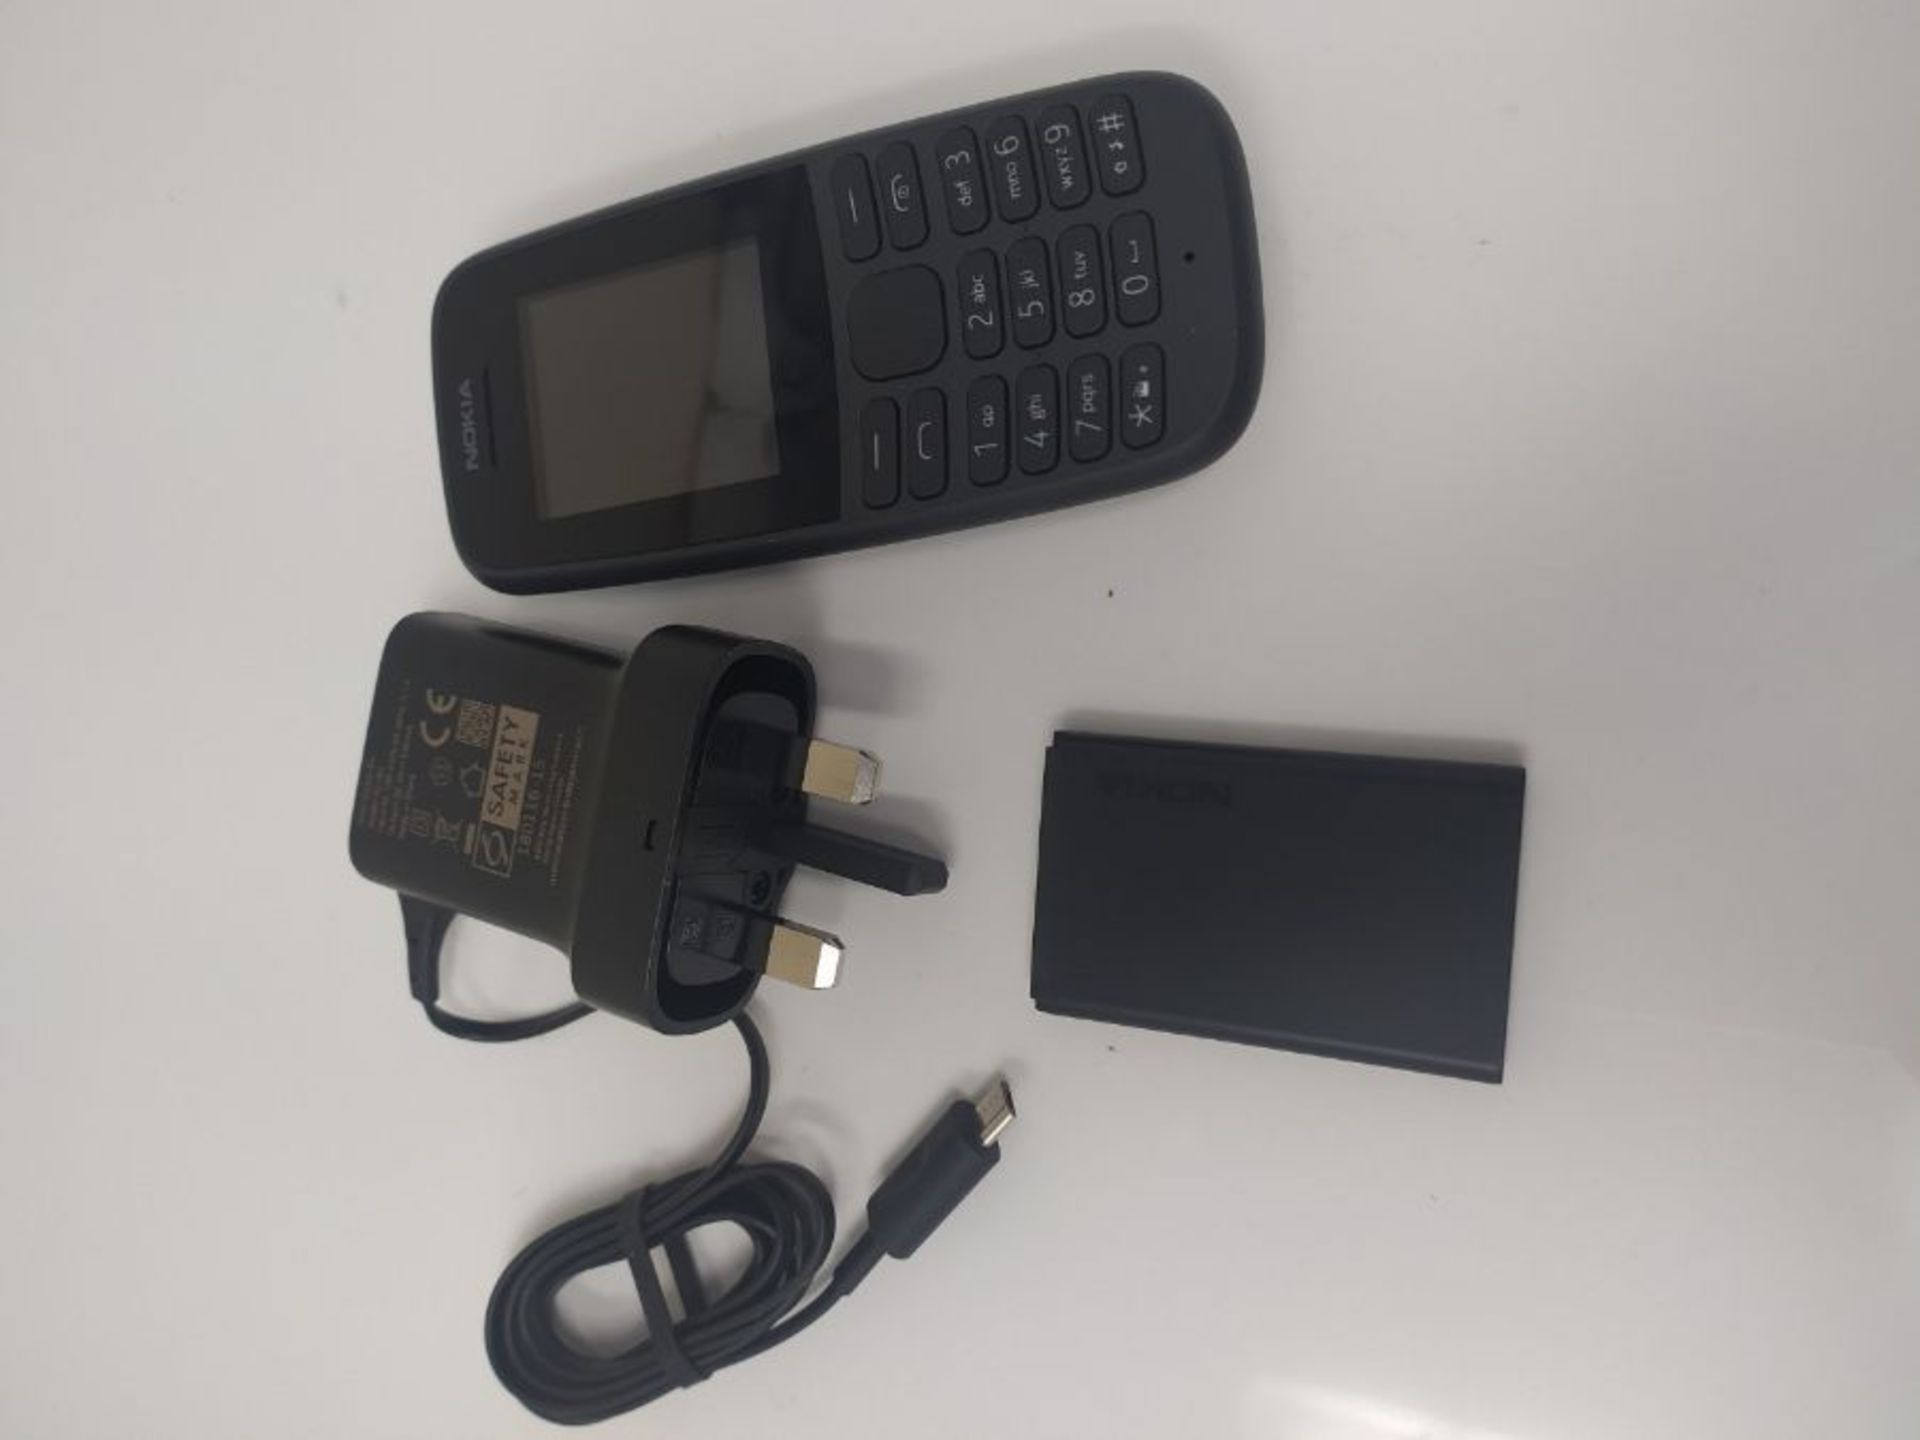 Nokia 105 Dual-SIM (2019) black unlocked - Image 2 of 2